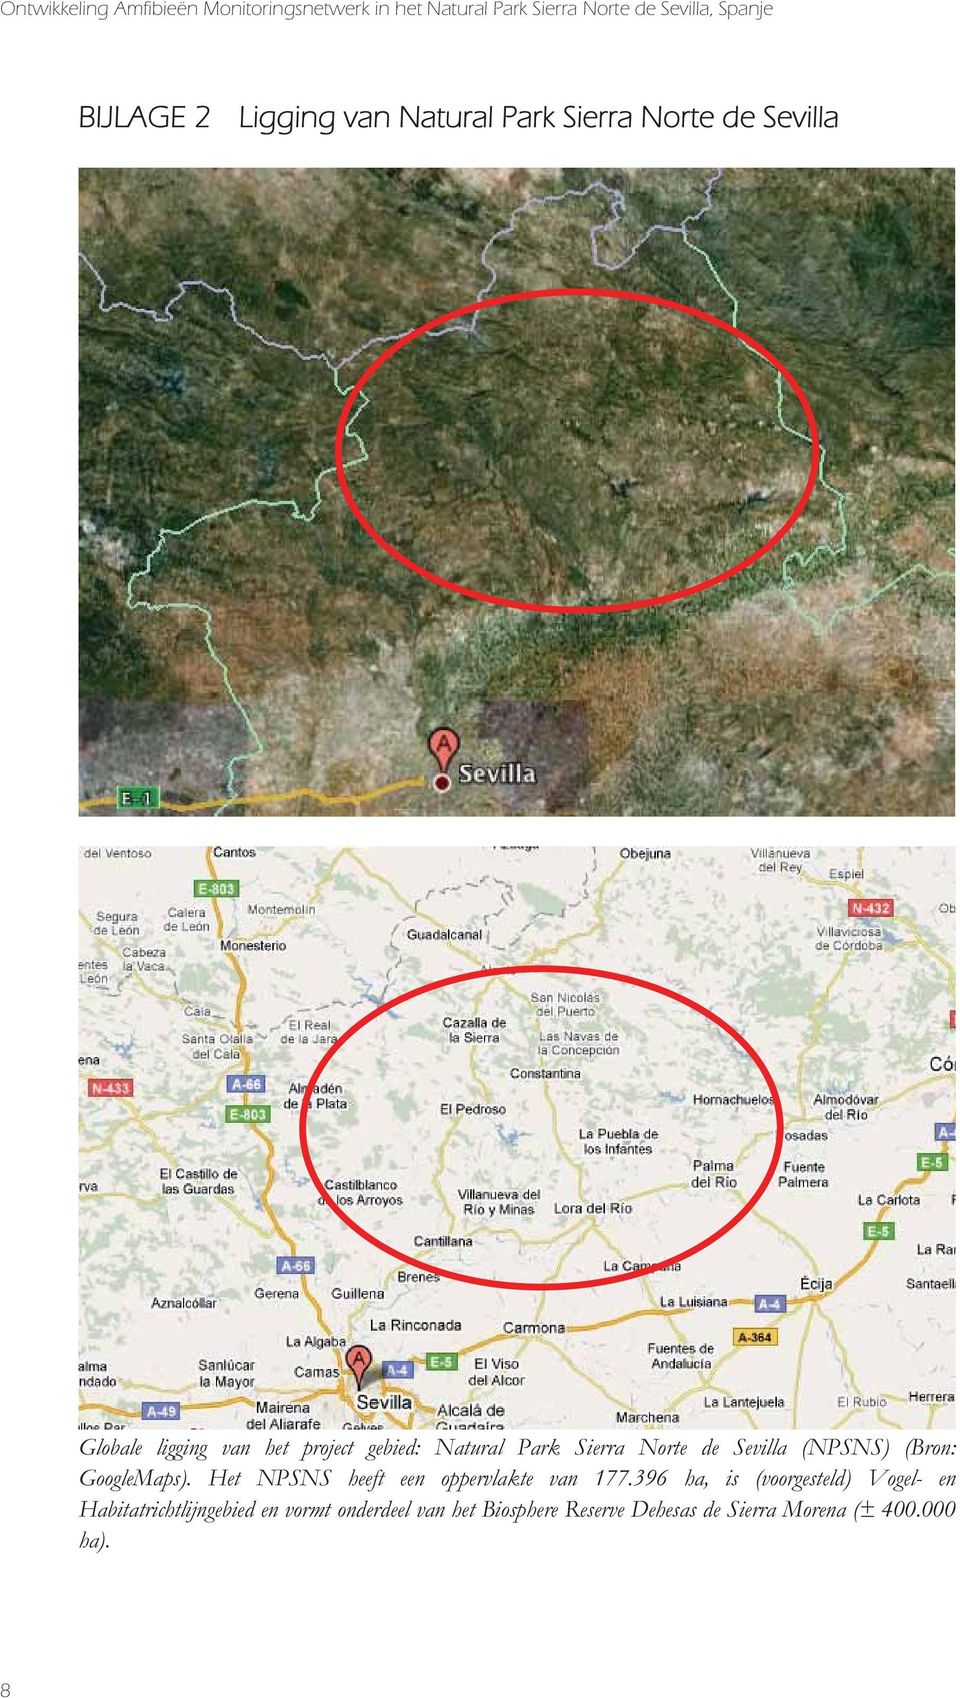 Norte de Sevilla (NPSNS) (Bron: GoogleMaps). Het NPSNS heeft een oppervlakte van 177.